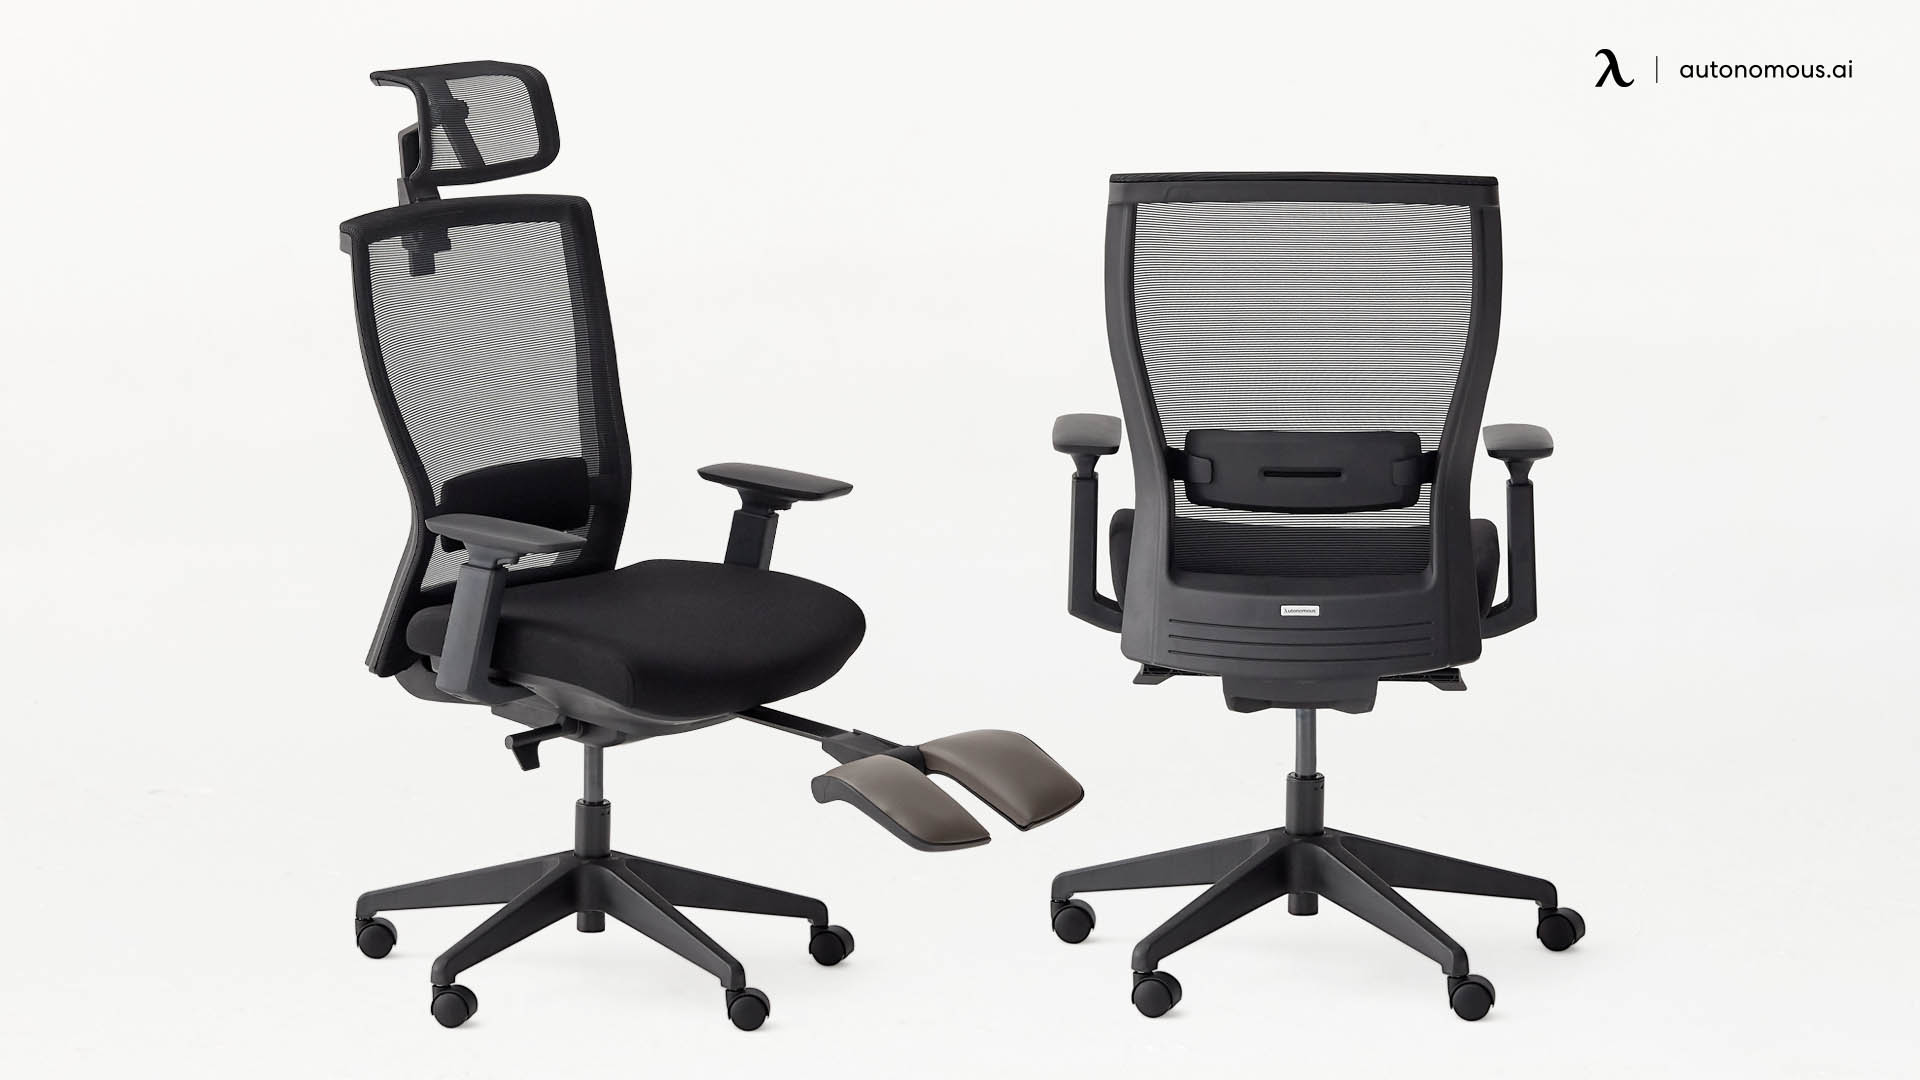 ErgoChair Recline home office chair for back pain